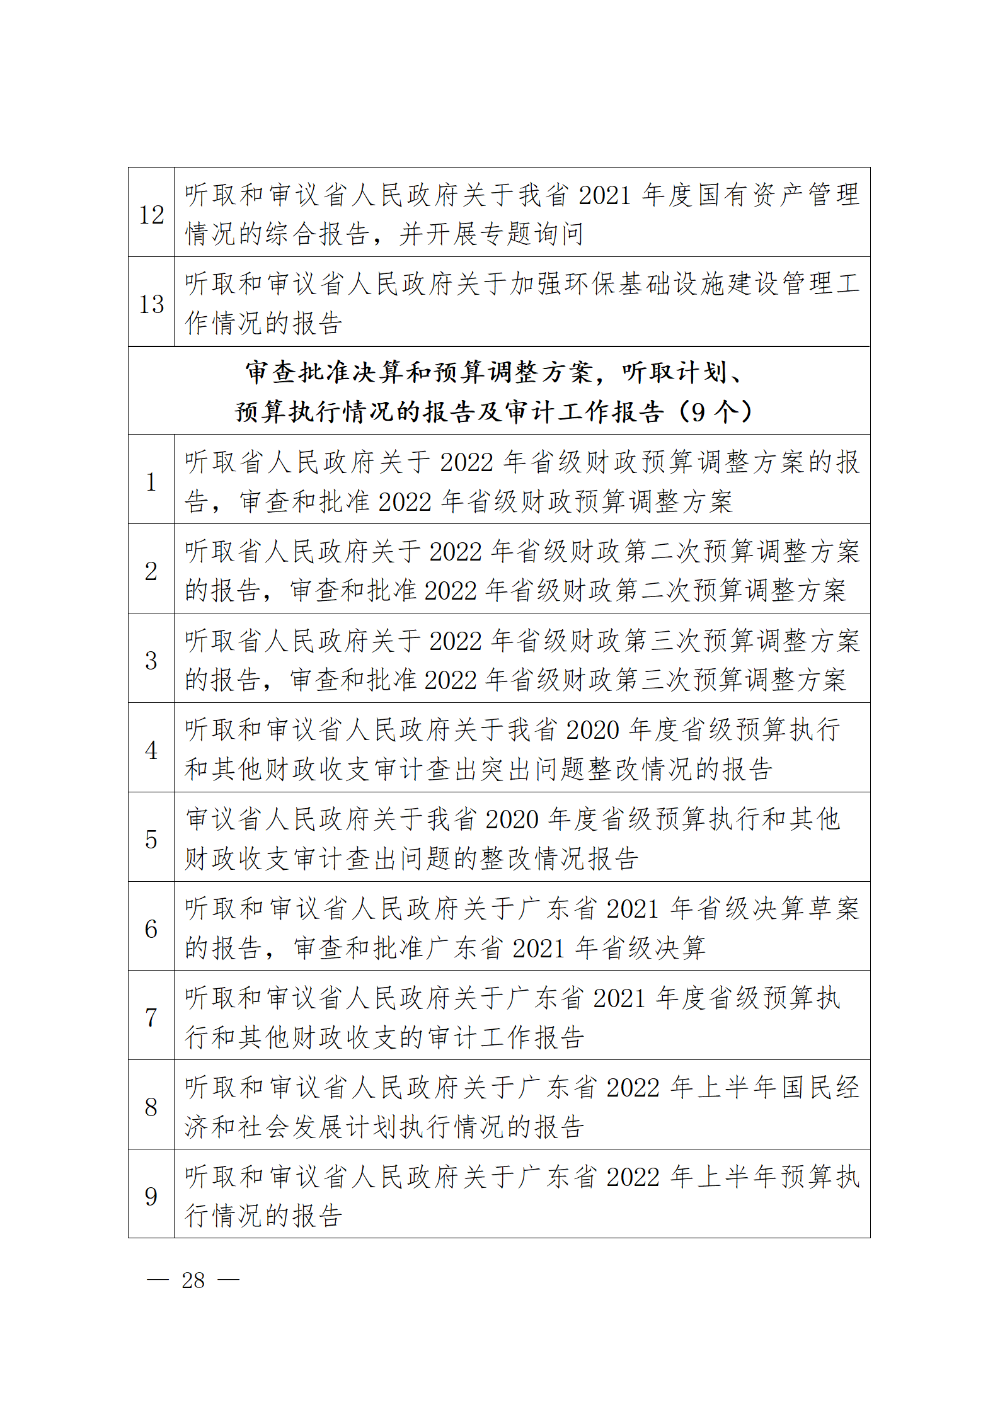 230115-（登报版定稿）广东省人民代表大会常务委员会工作报告_28.png